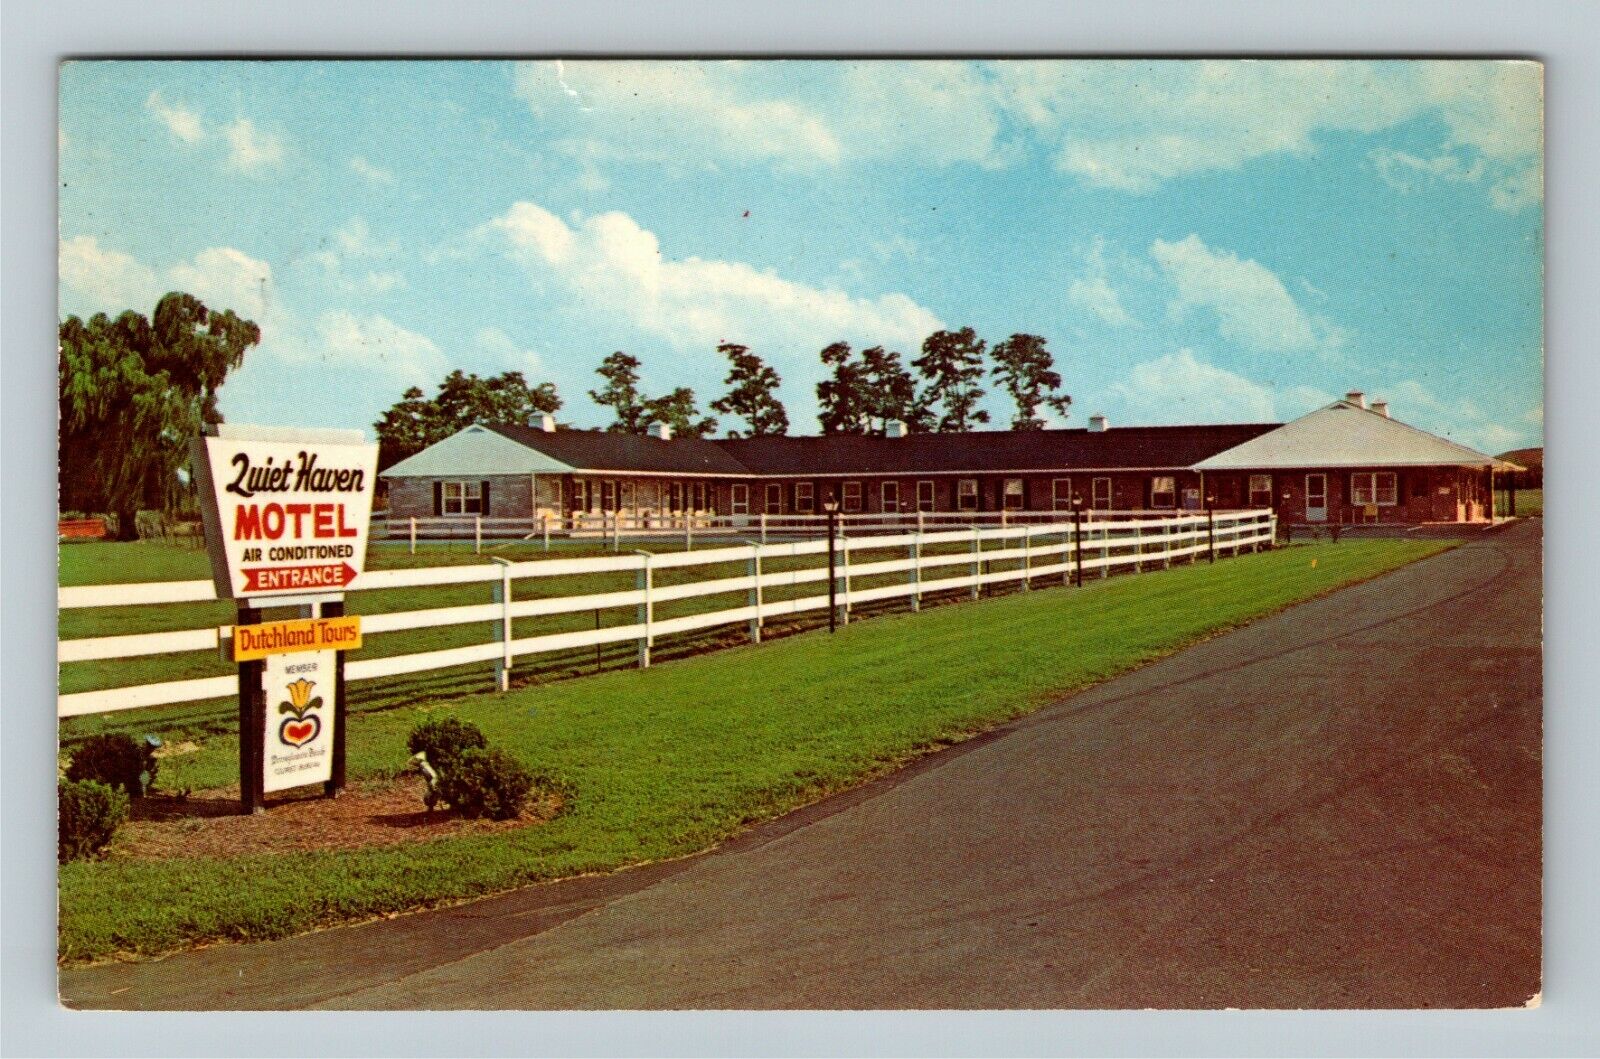 Ronks PA-Pennsylvania, Quiet Haven Motel, Antique, c1970 Vintage Postcard